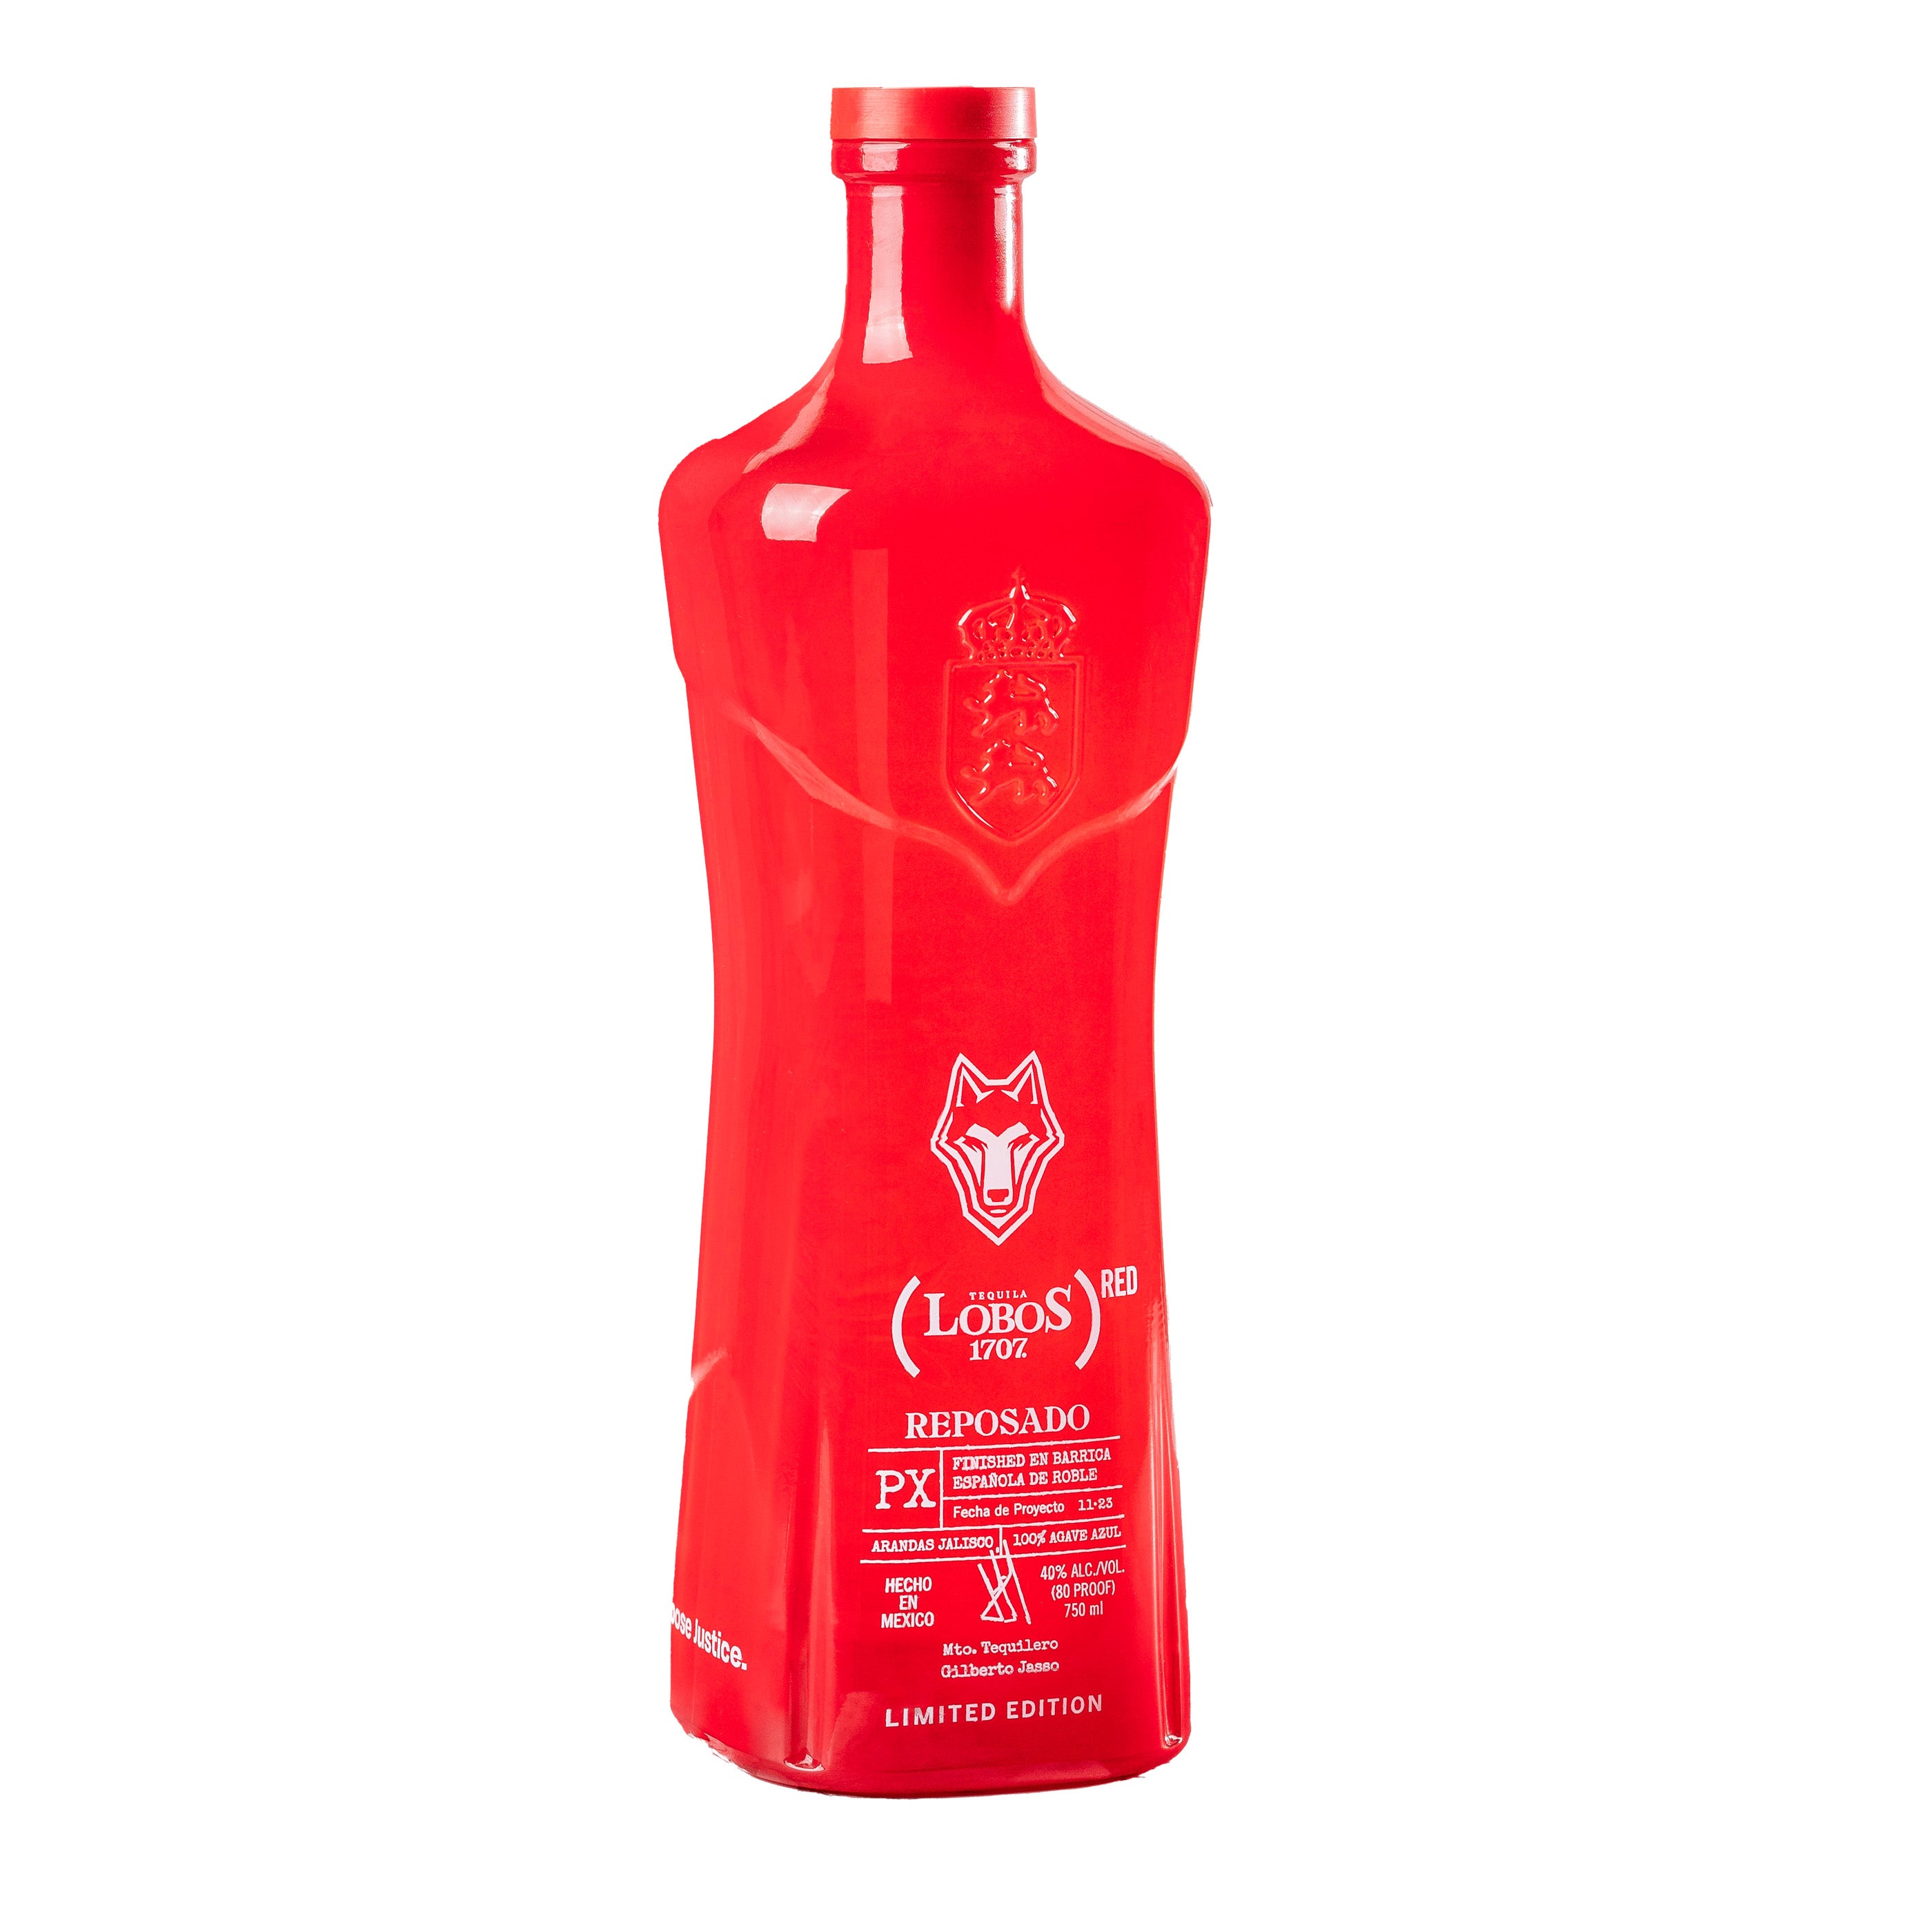 Lobos 1707 (RED) Reposado Tequila